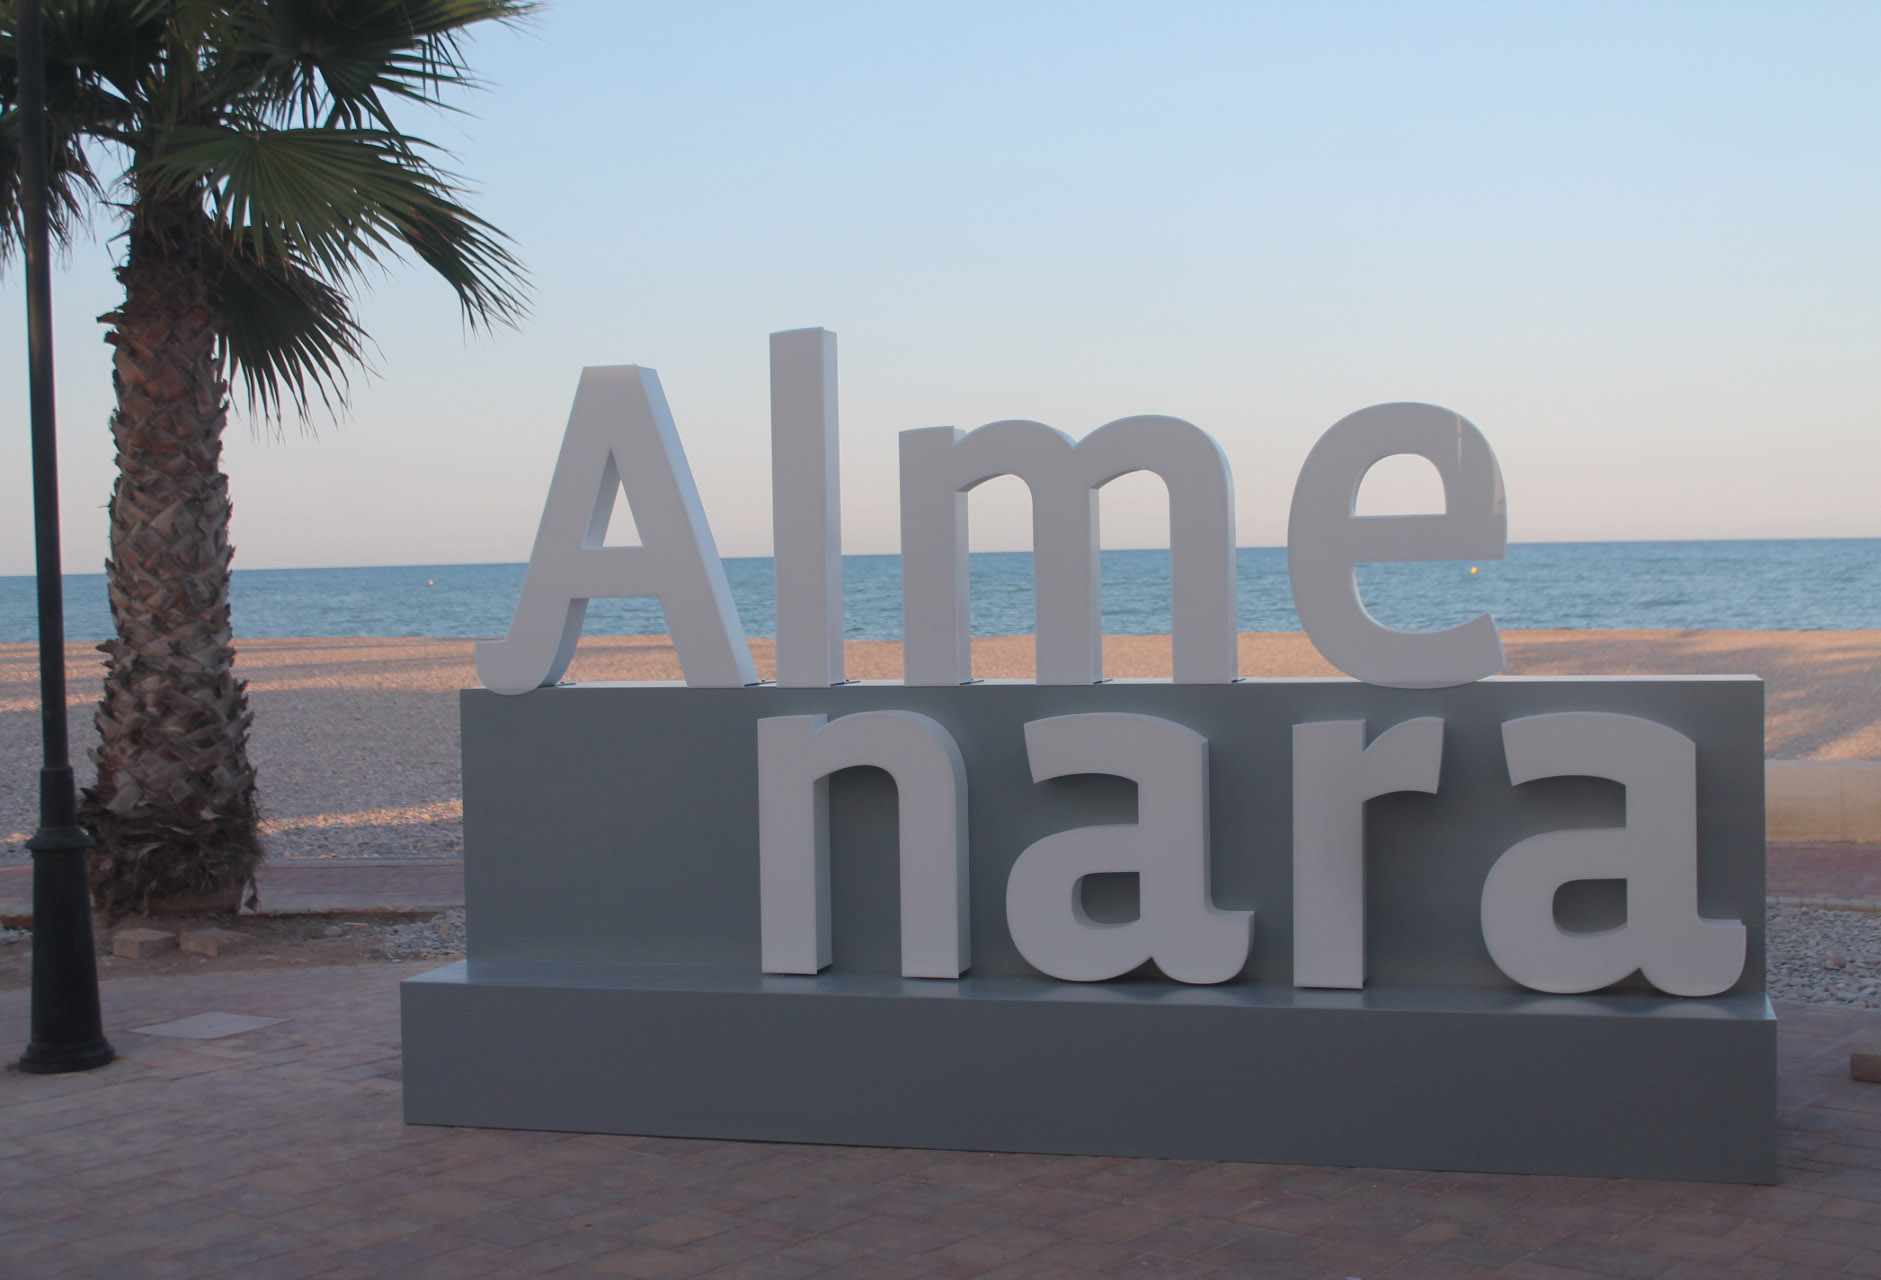 Las letras corpóreas, nuevo punto de encuentro en el paseo marítimo de la Playa Casablanca de Almenara